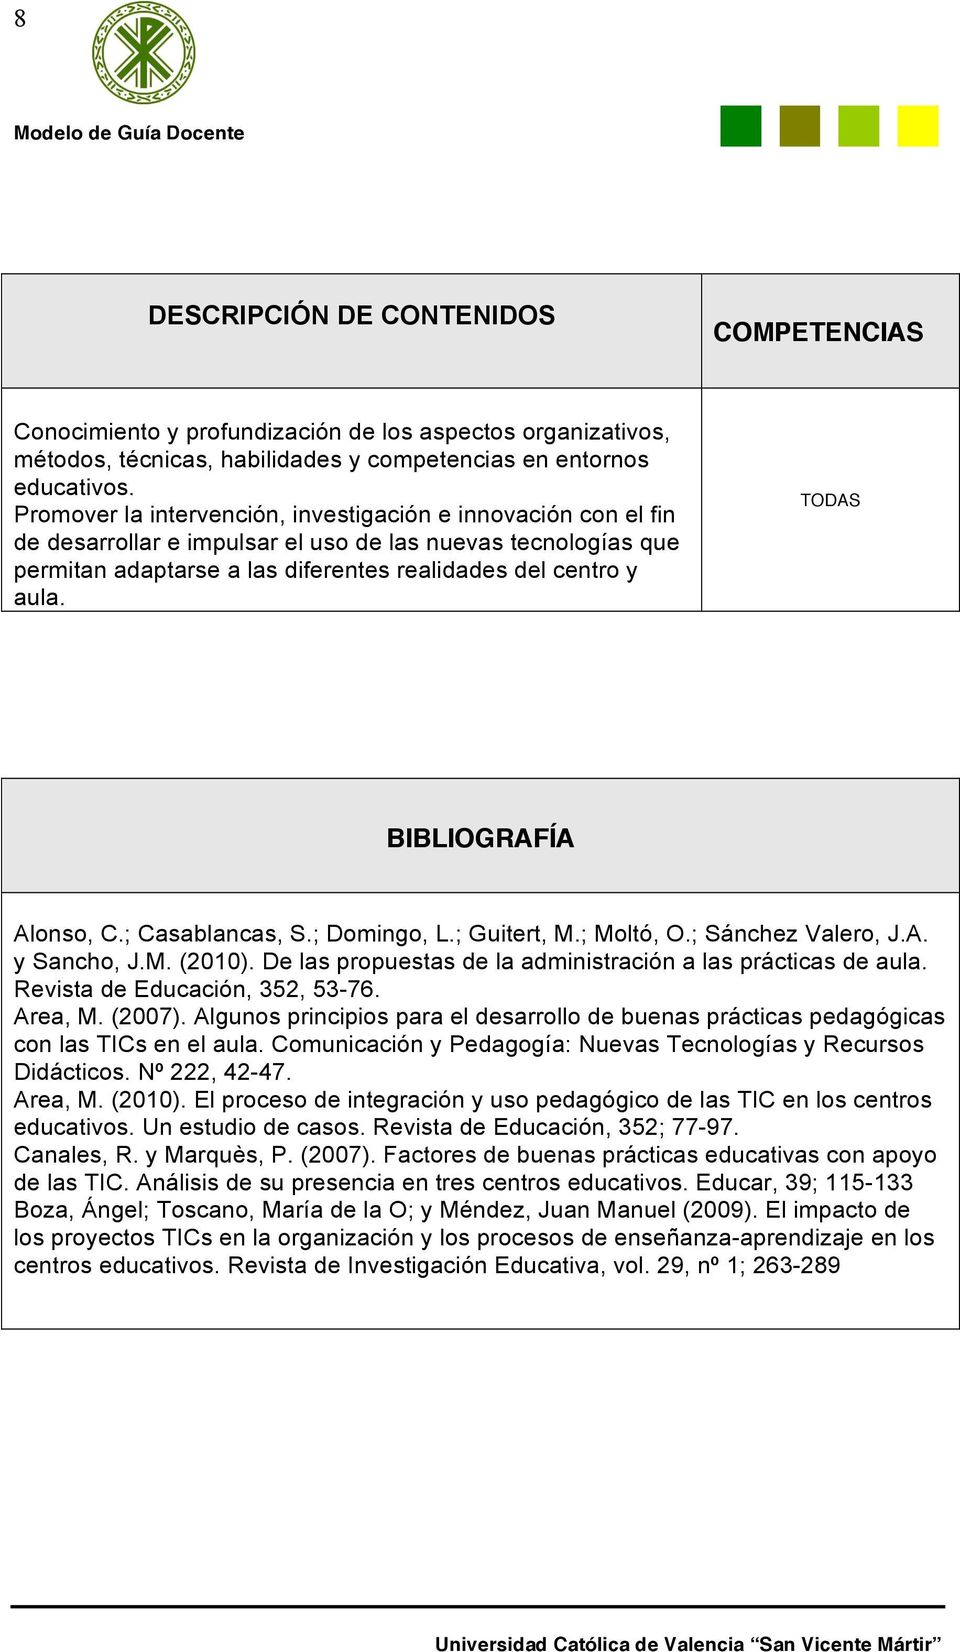 TODAS BIBLIOGRAFÍA Alonso, C.; Casablancas, S.; Domingo, L.; Guitert, M.; Moltó, O.; Sánchez Valero, J.A. y Sancho, J.M. (2010). De las propuestas de la administración a las prácticas de aula.